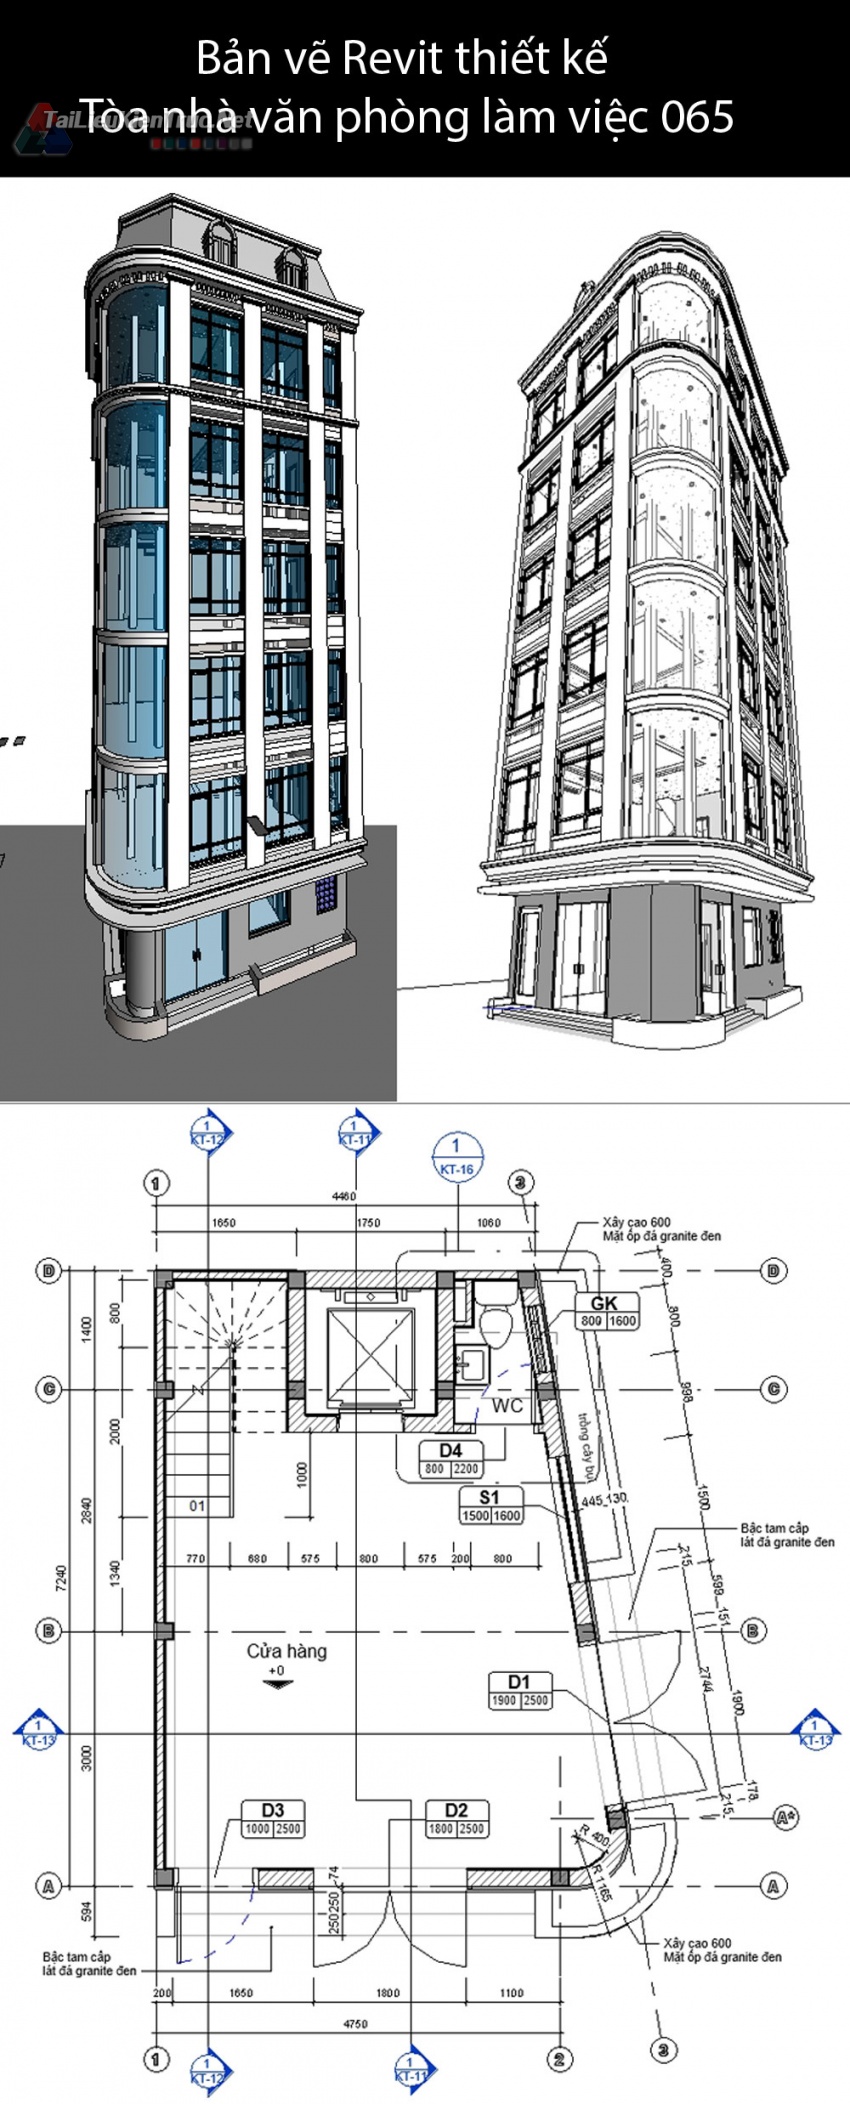 Bản vẽ Revit thiết kế Tòa nhà văn phòng làm việc Phan Chu Trinh 065